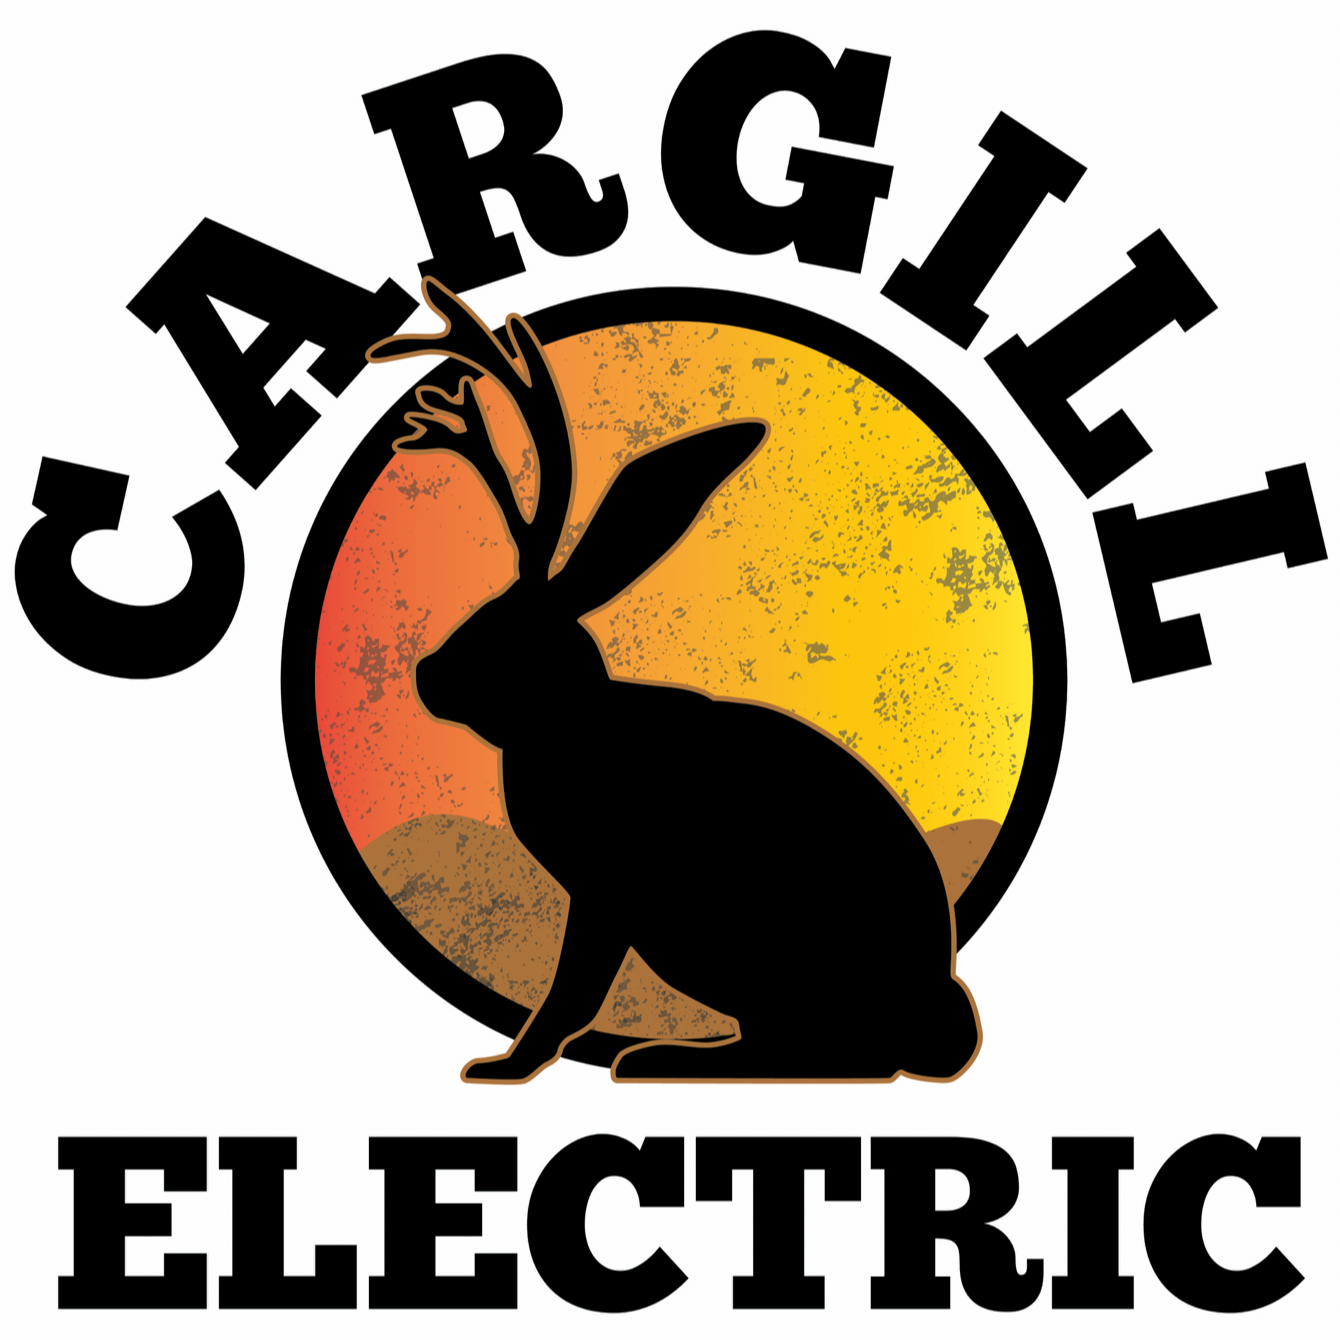 Cargill Electric 27349 Nelson Rd, San Benito Texas 78586